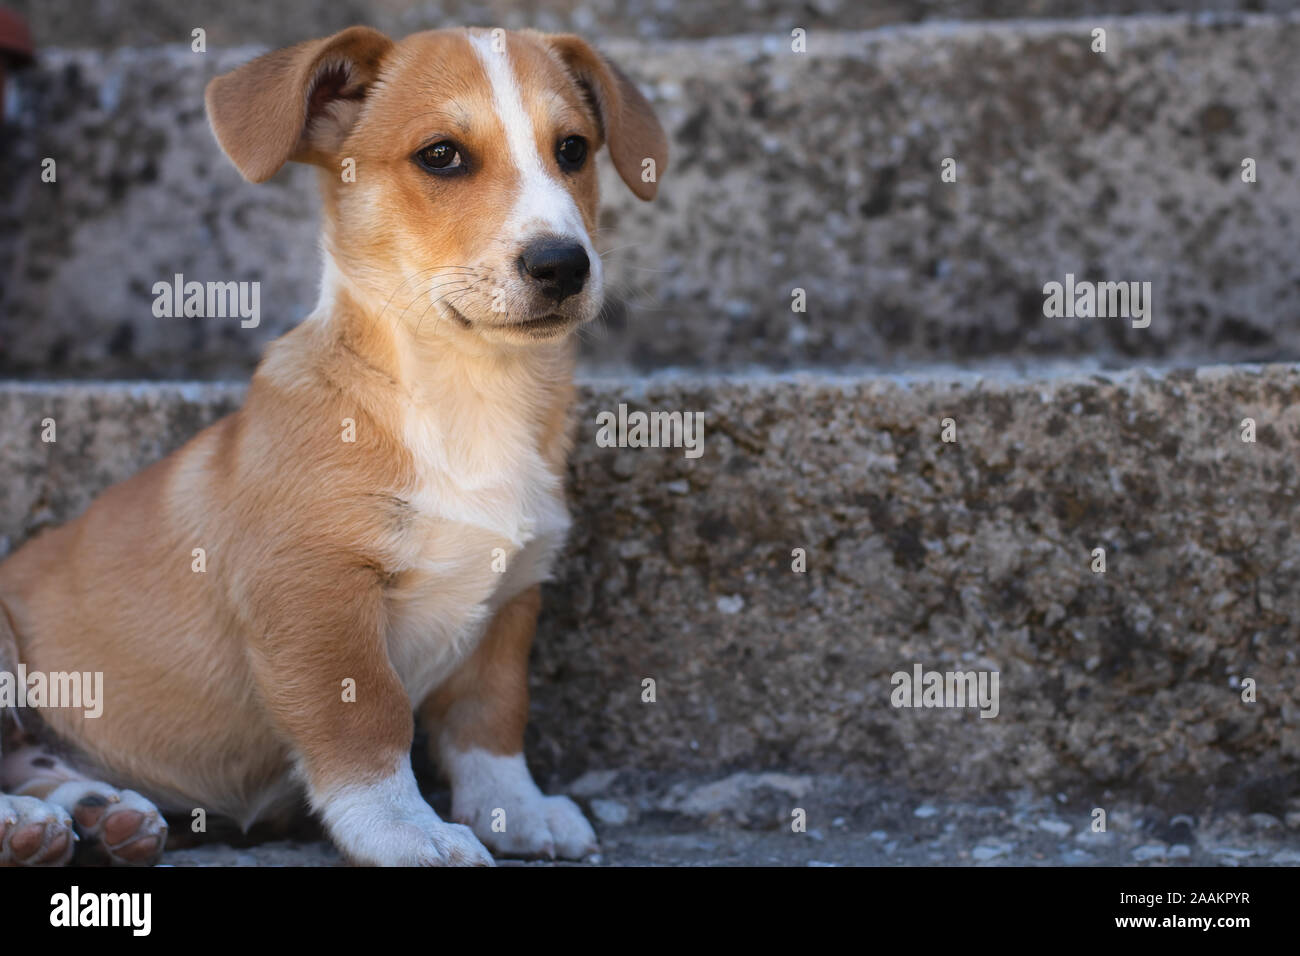 Cane con pelo marrone e carino gli occhi e le orecchie grandi. Foto Stock